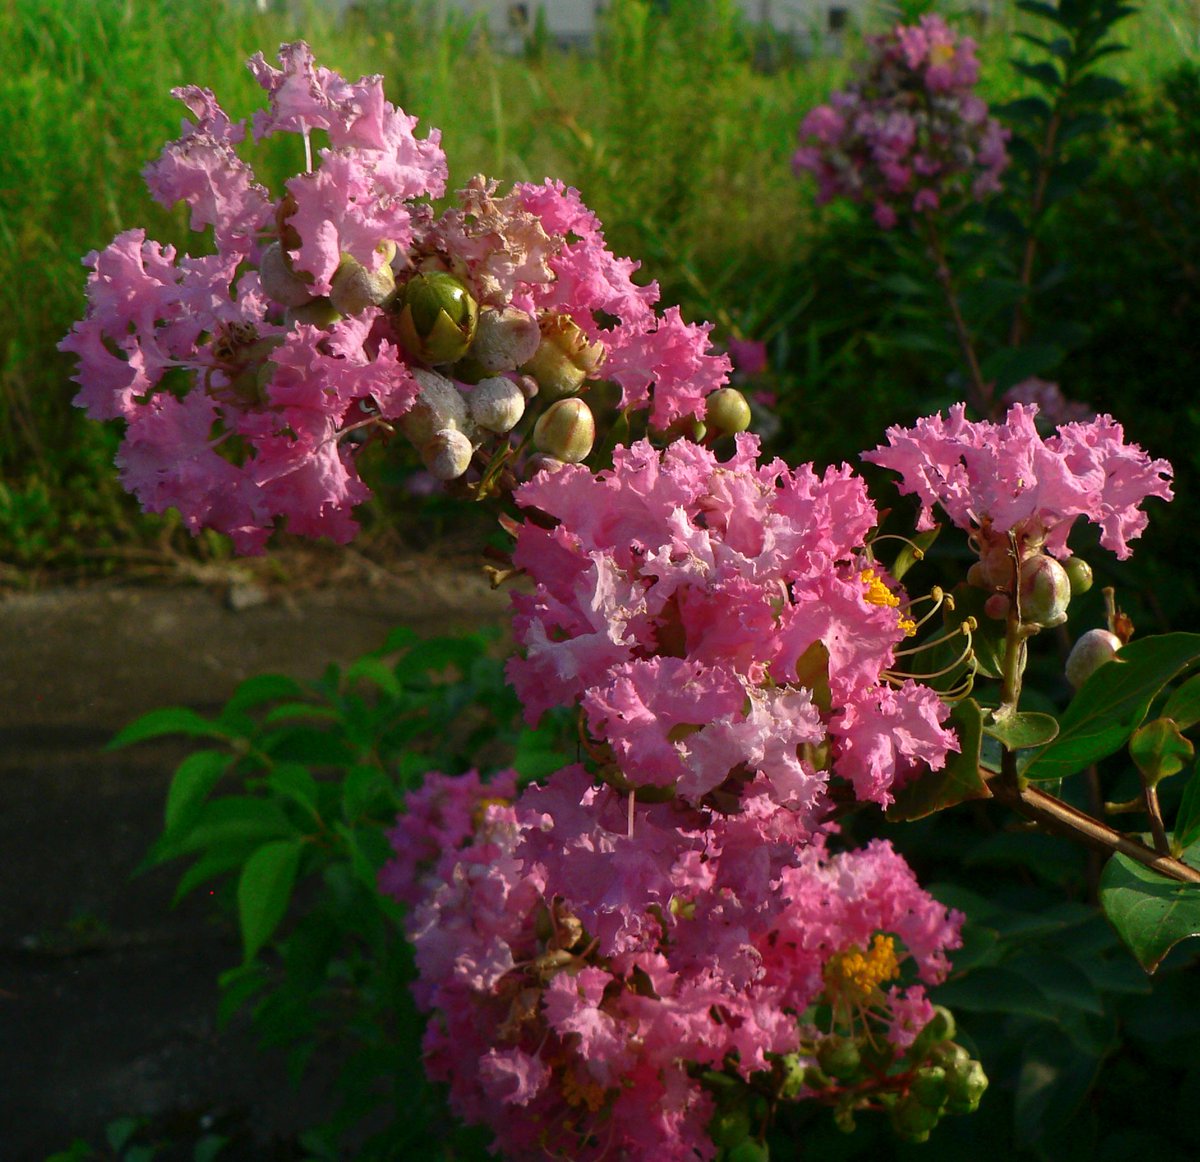 こころんグリーン على تويتر うちの前の空き地に ピンク色のサルスベリの花が咲いていました ピンクのフリルで包まれたような 優しい花びらが綺麗です 夏のこの時期 あちこちのお宅の庭で見かける花です サルスベリ ピンク色 フリル 花びら 夏の花 夏